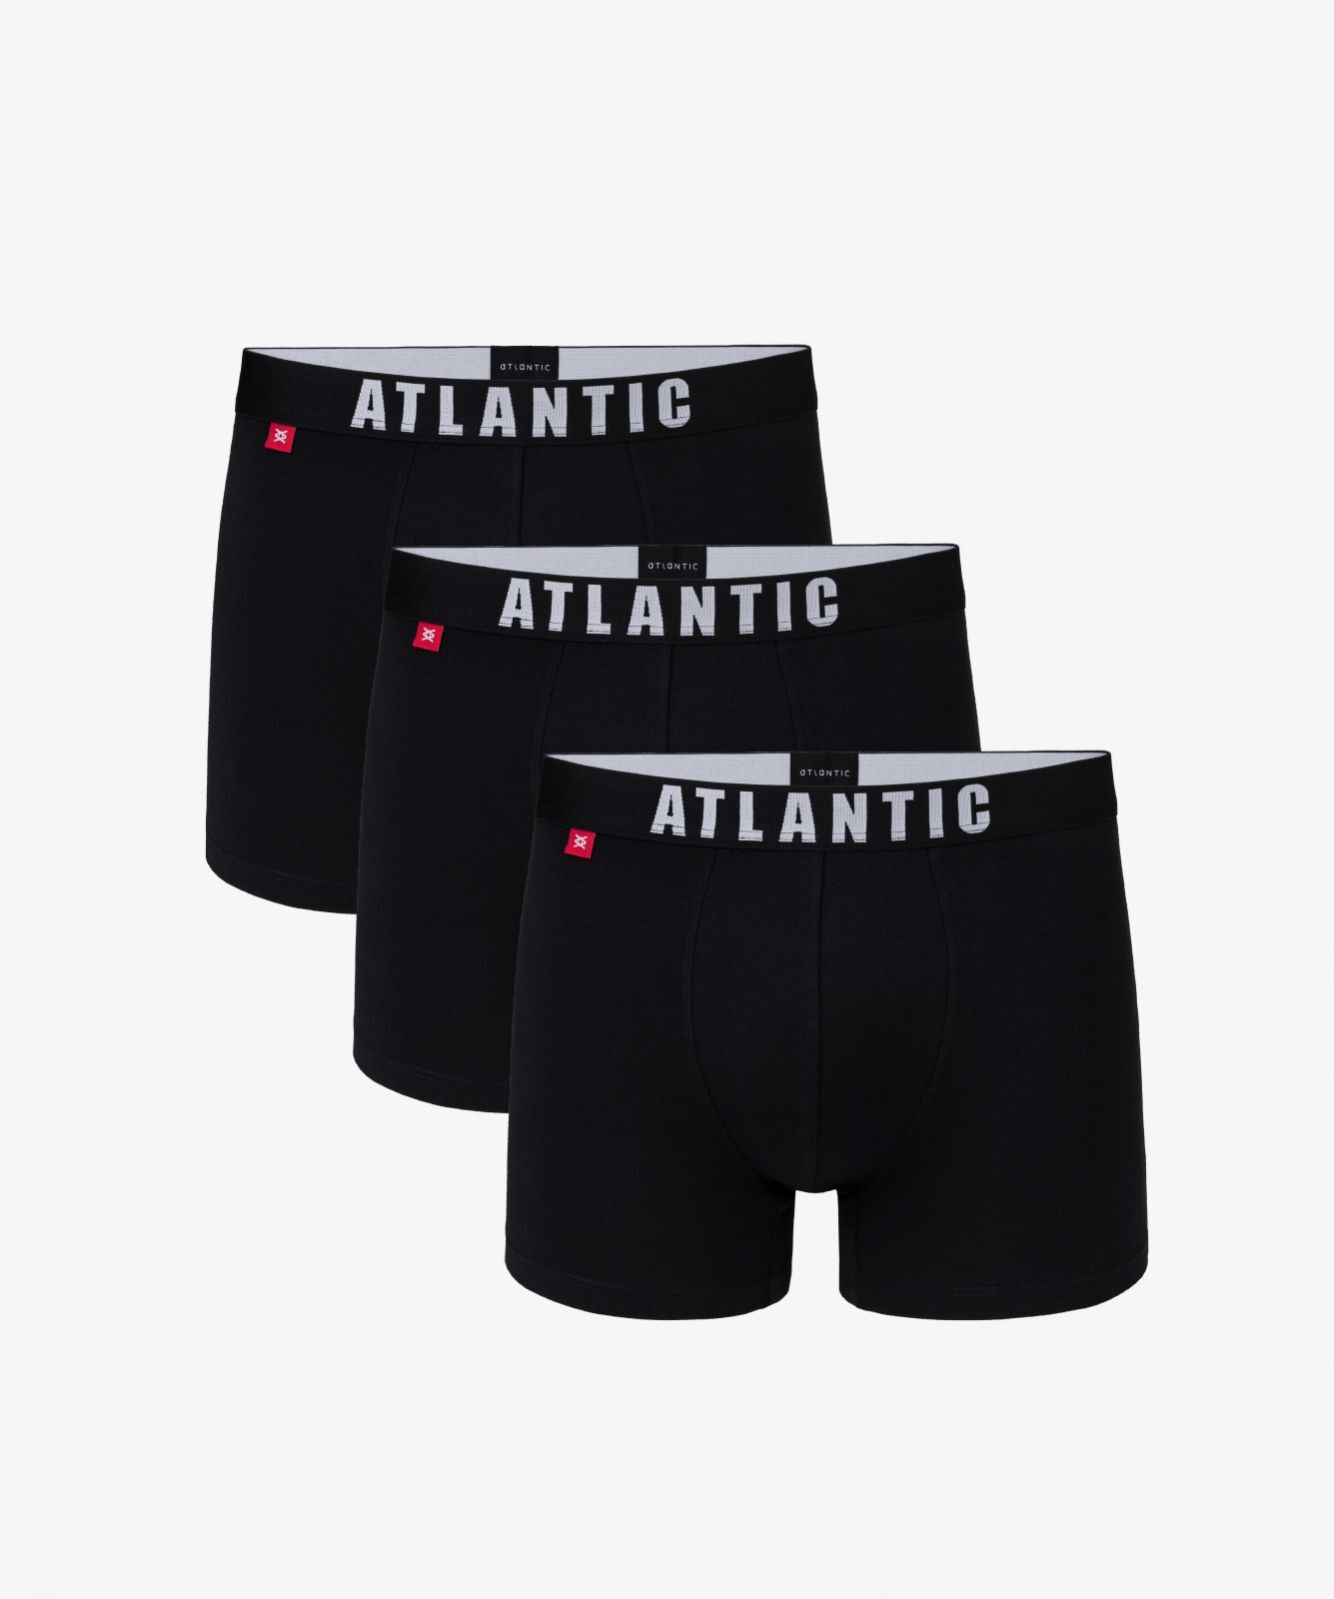 Мужские трусы шорты Atlantic, набор из 3 шт., хлопок, черные, 3MH-011